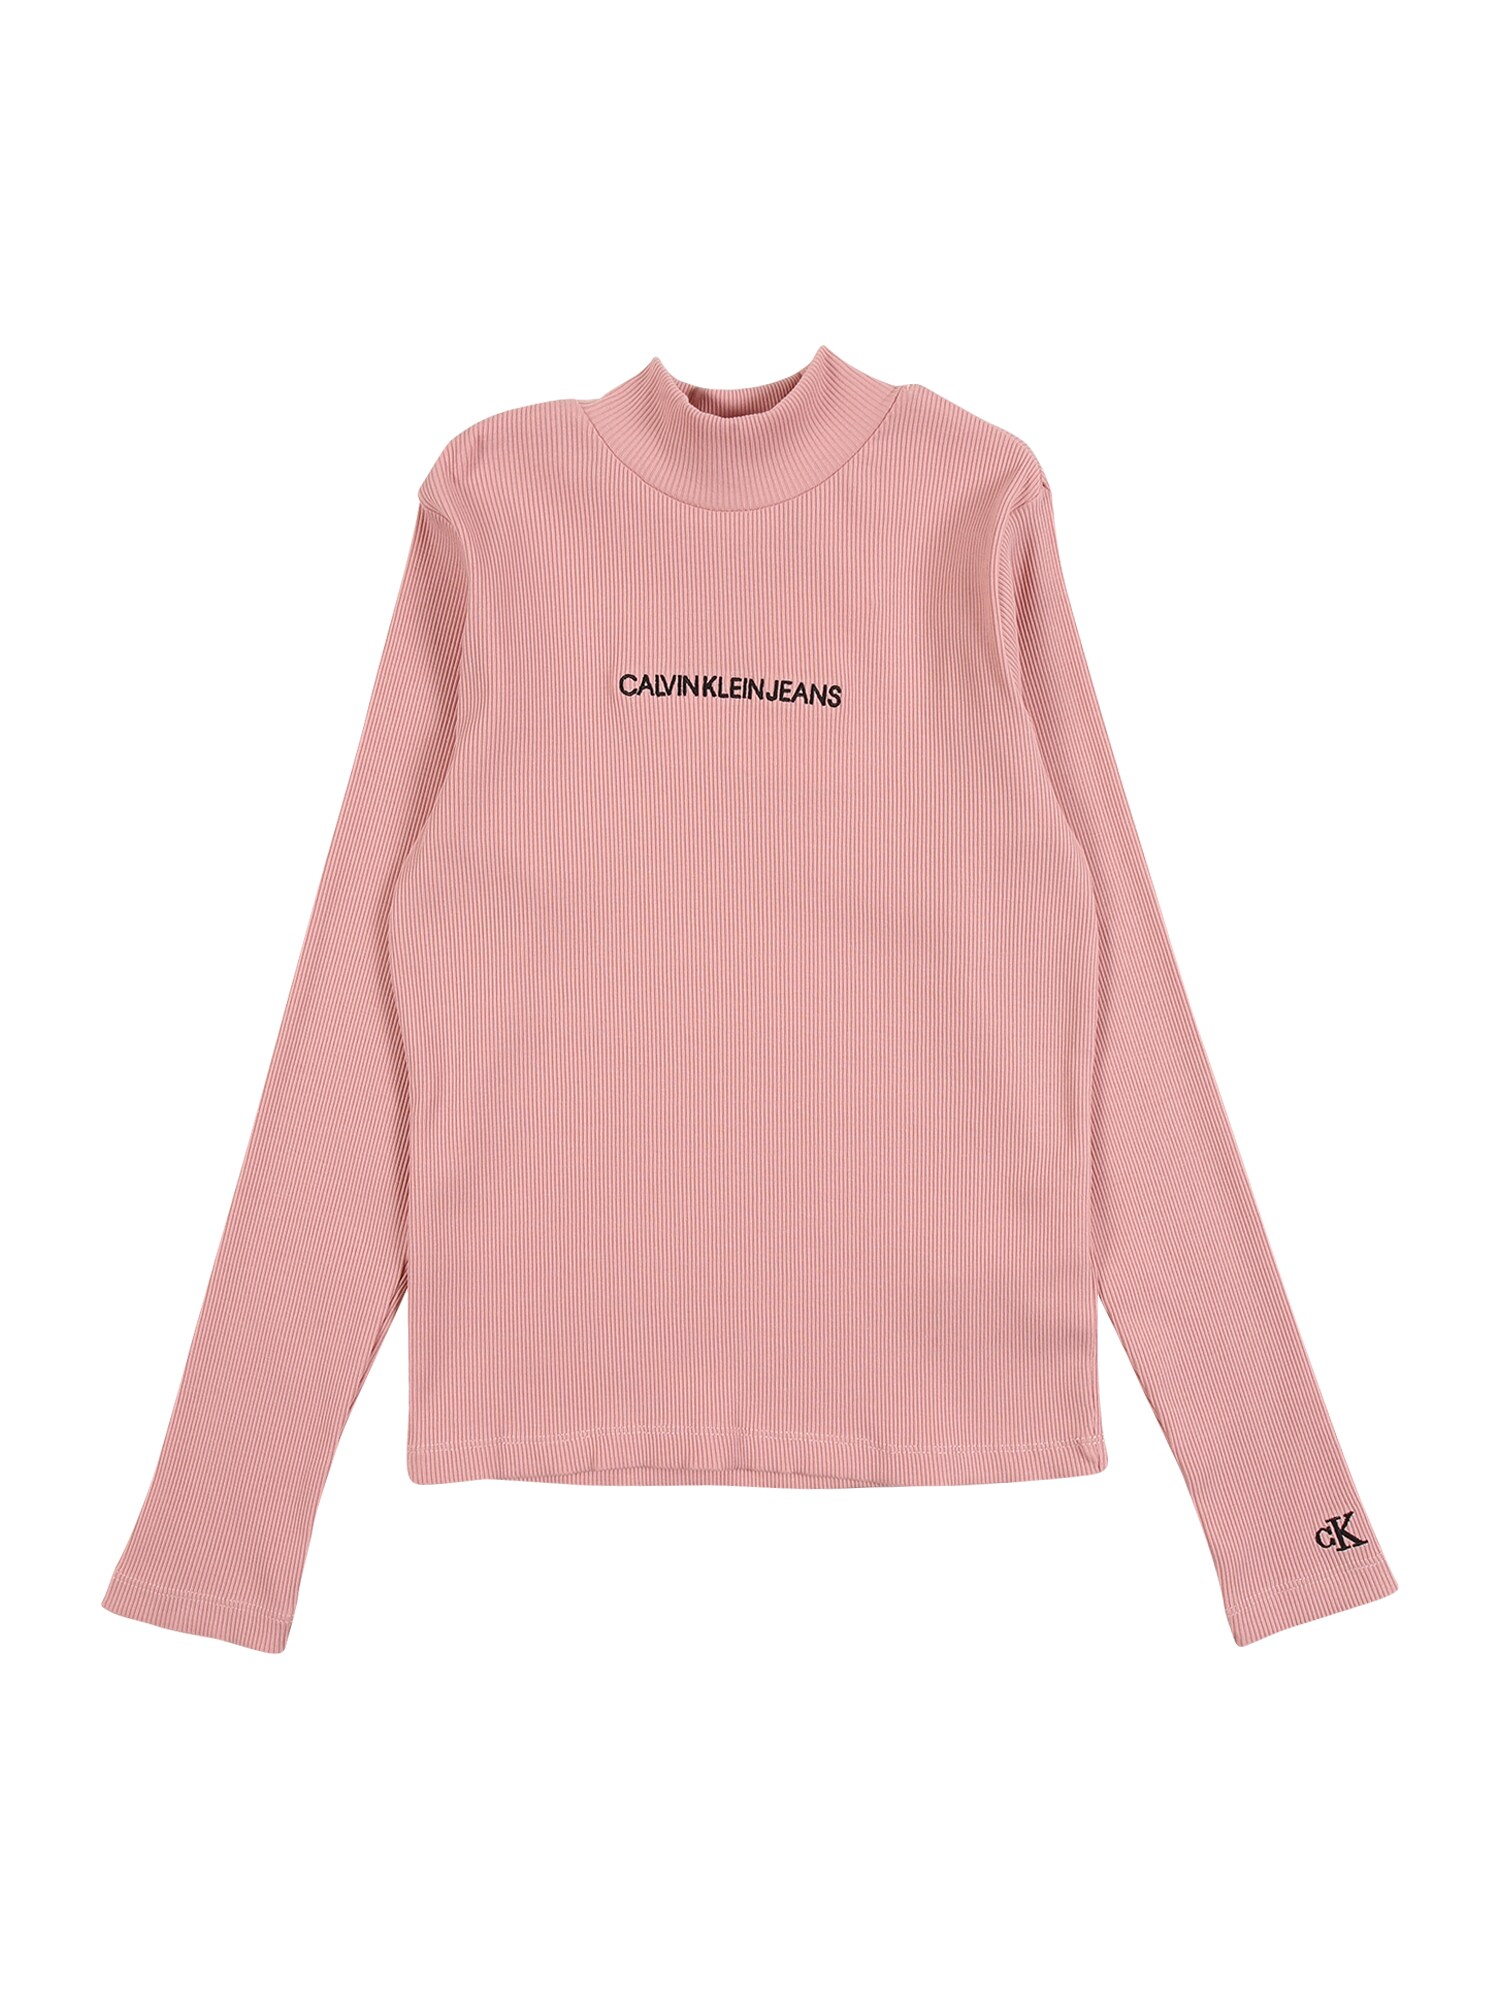 Calvin Klein Jeans Marškinėliai  ryškiai rožinė spalva